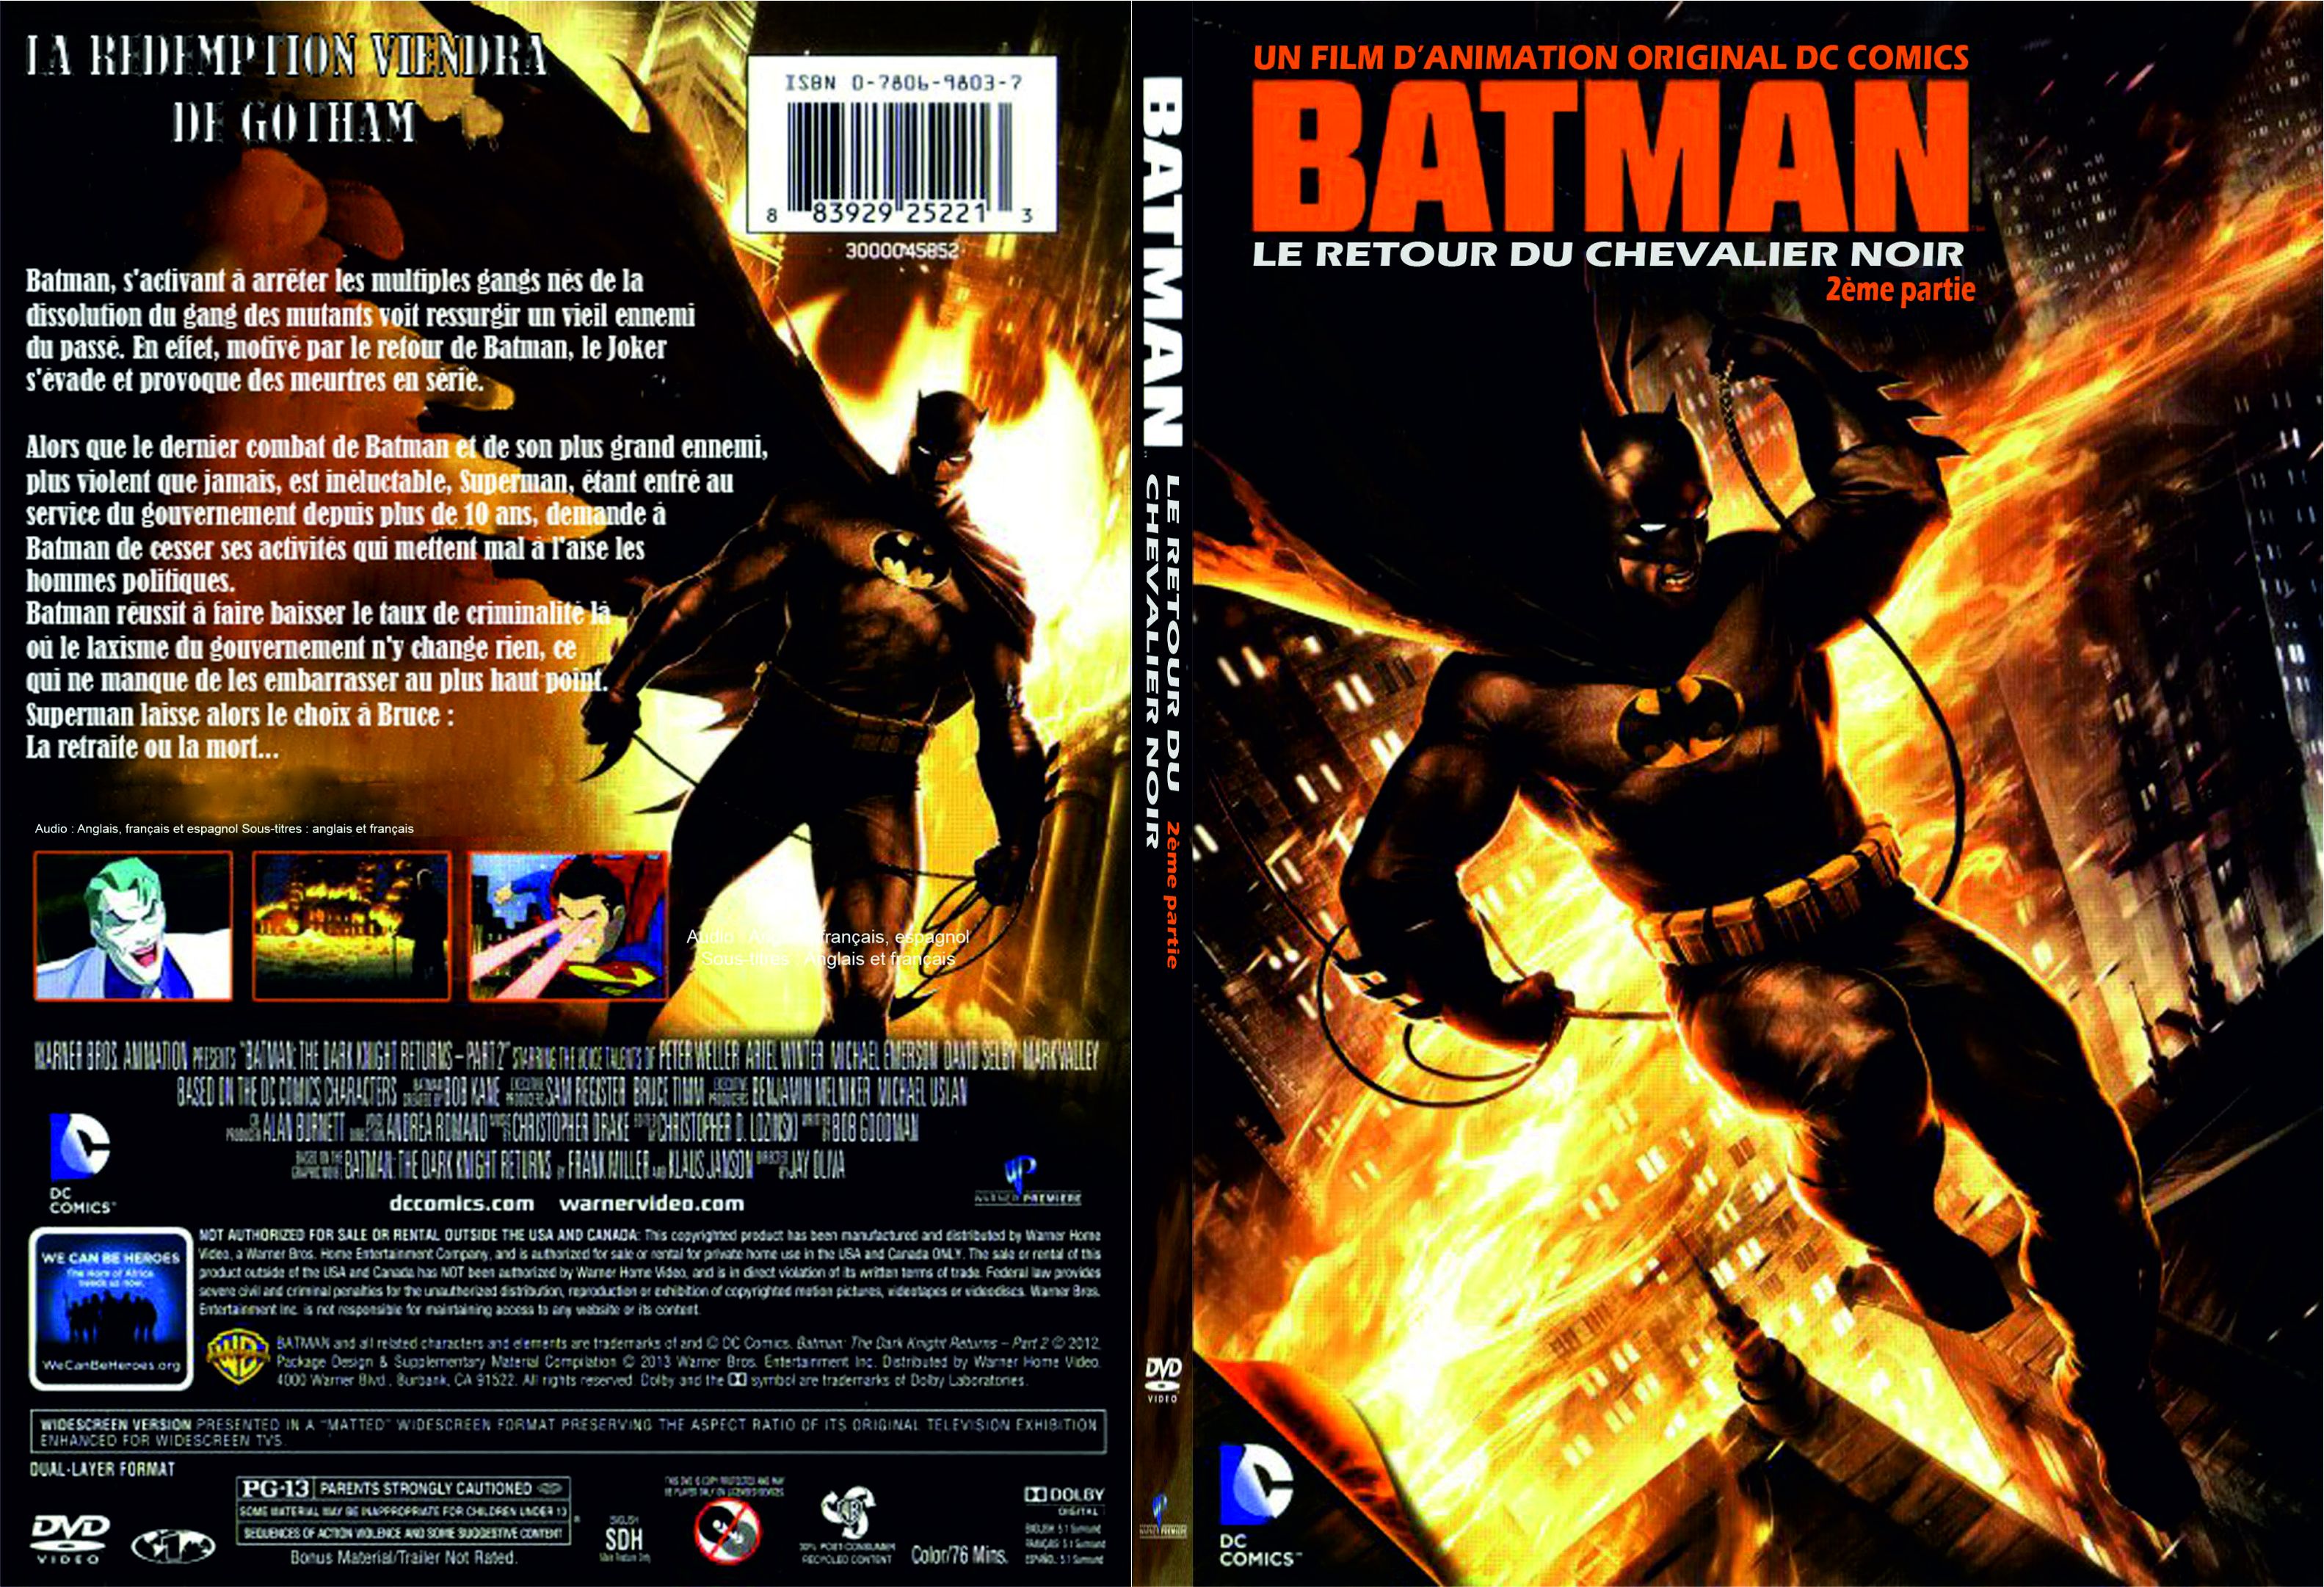 Jaquette DVD Batman Le retour du chevalier noir partie 2 custom - SLIM